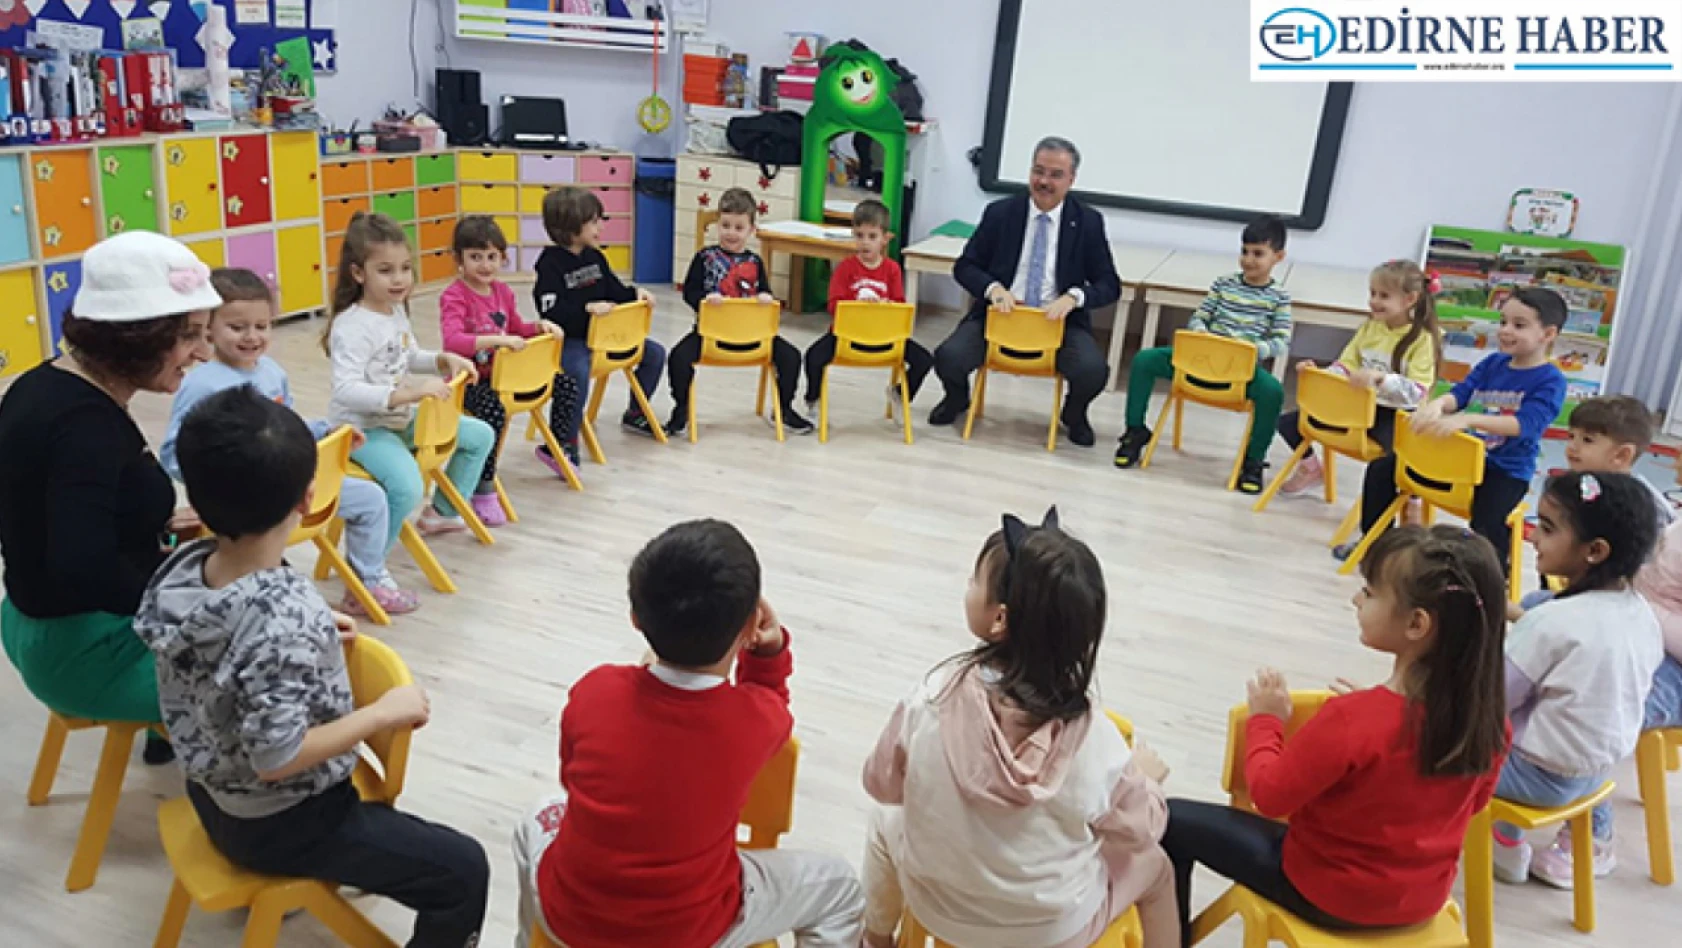 Edirne'de okul öncesi okullaşma oranı hızla artıyor